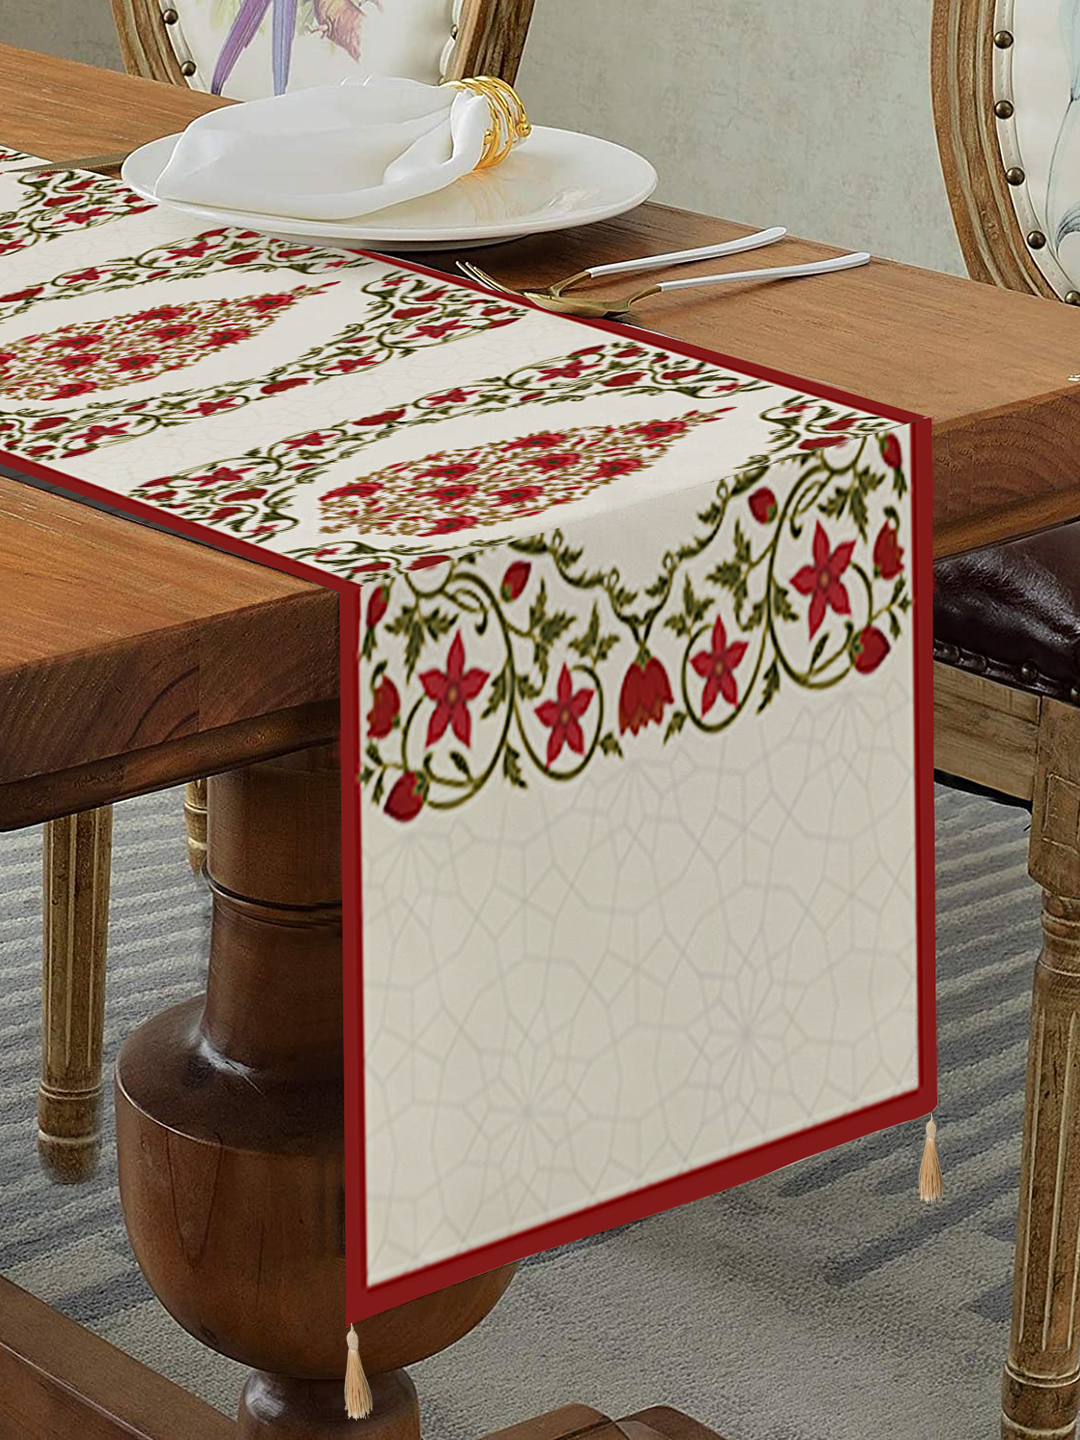 Homewards Ornate Leaf Table Runner with Tassels in Polyvelvet